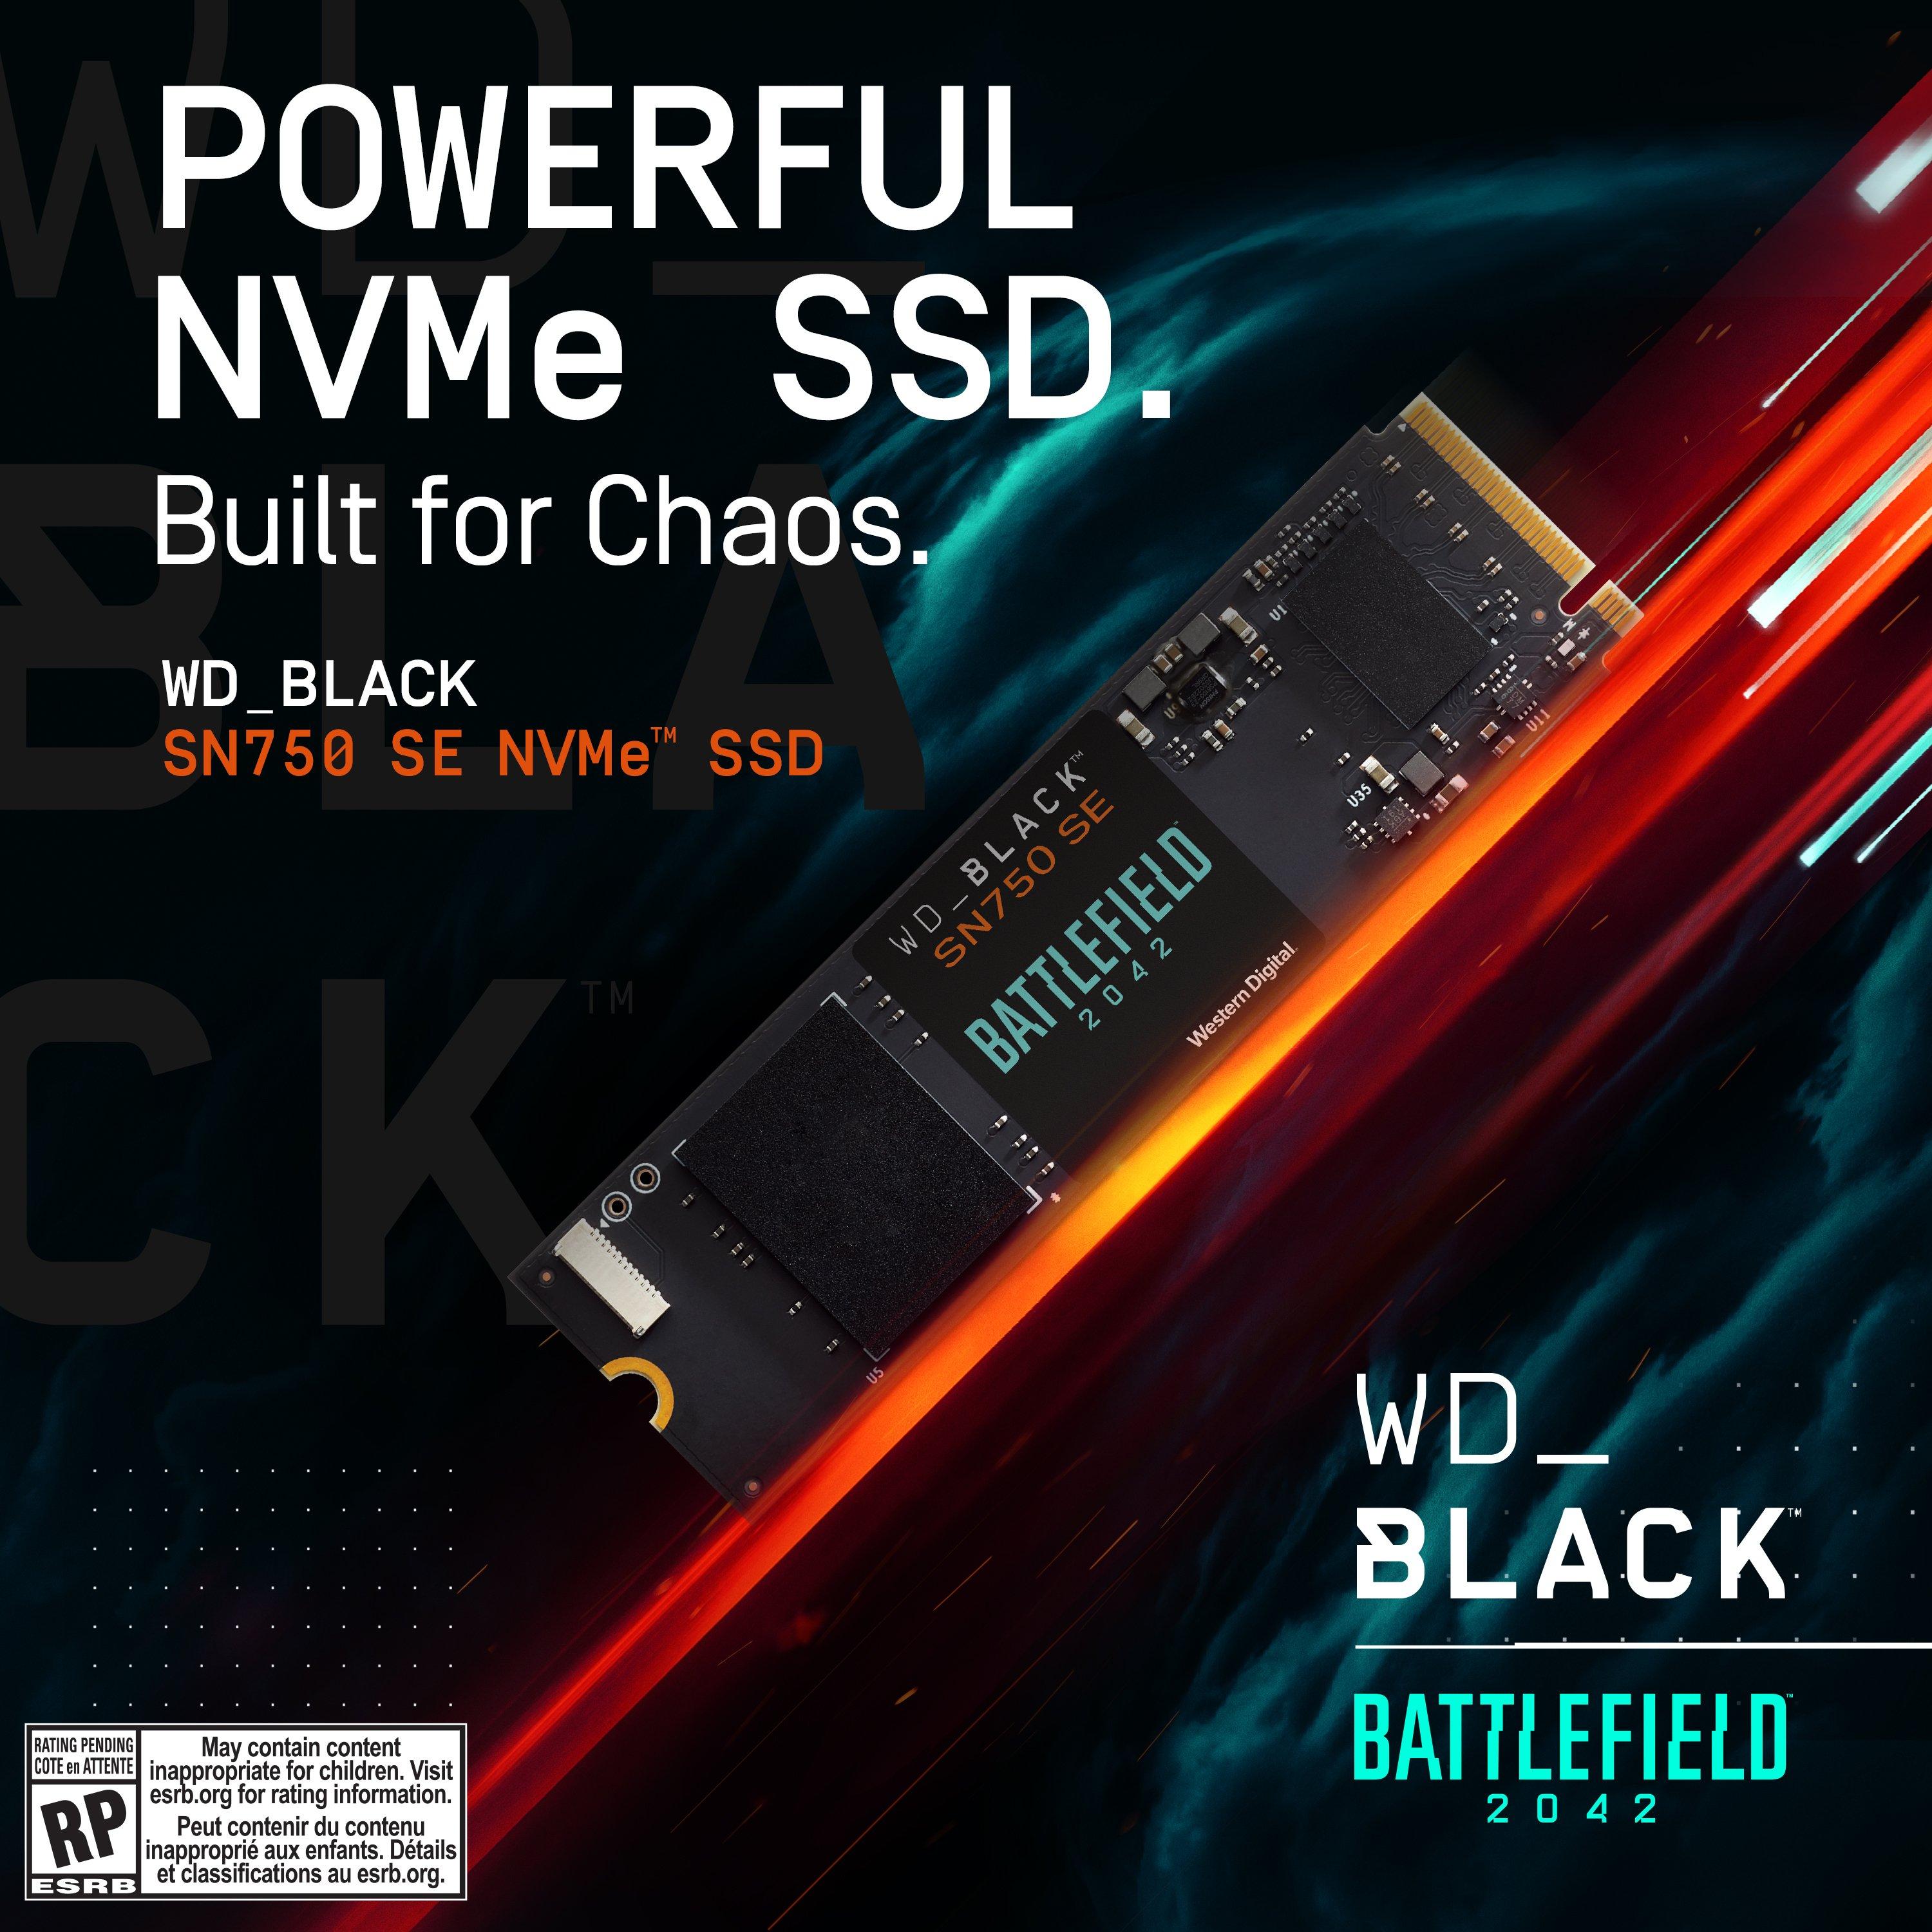 WD_BLACK SN750 SE NVMe SSD Battlefield Bundle 1TB - PC